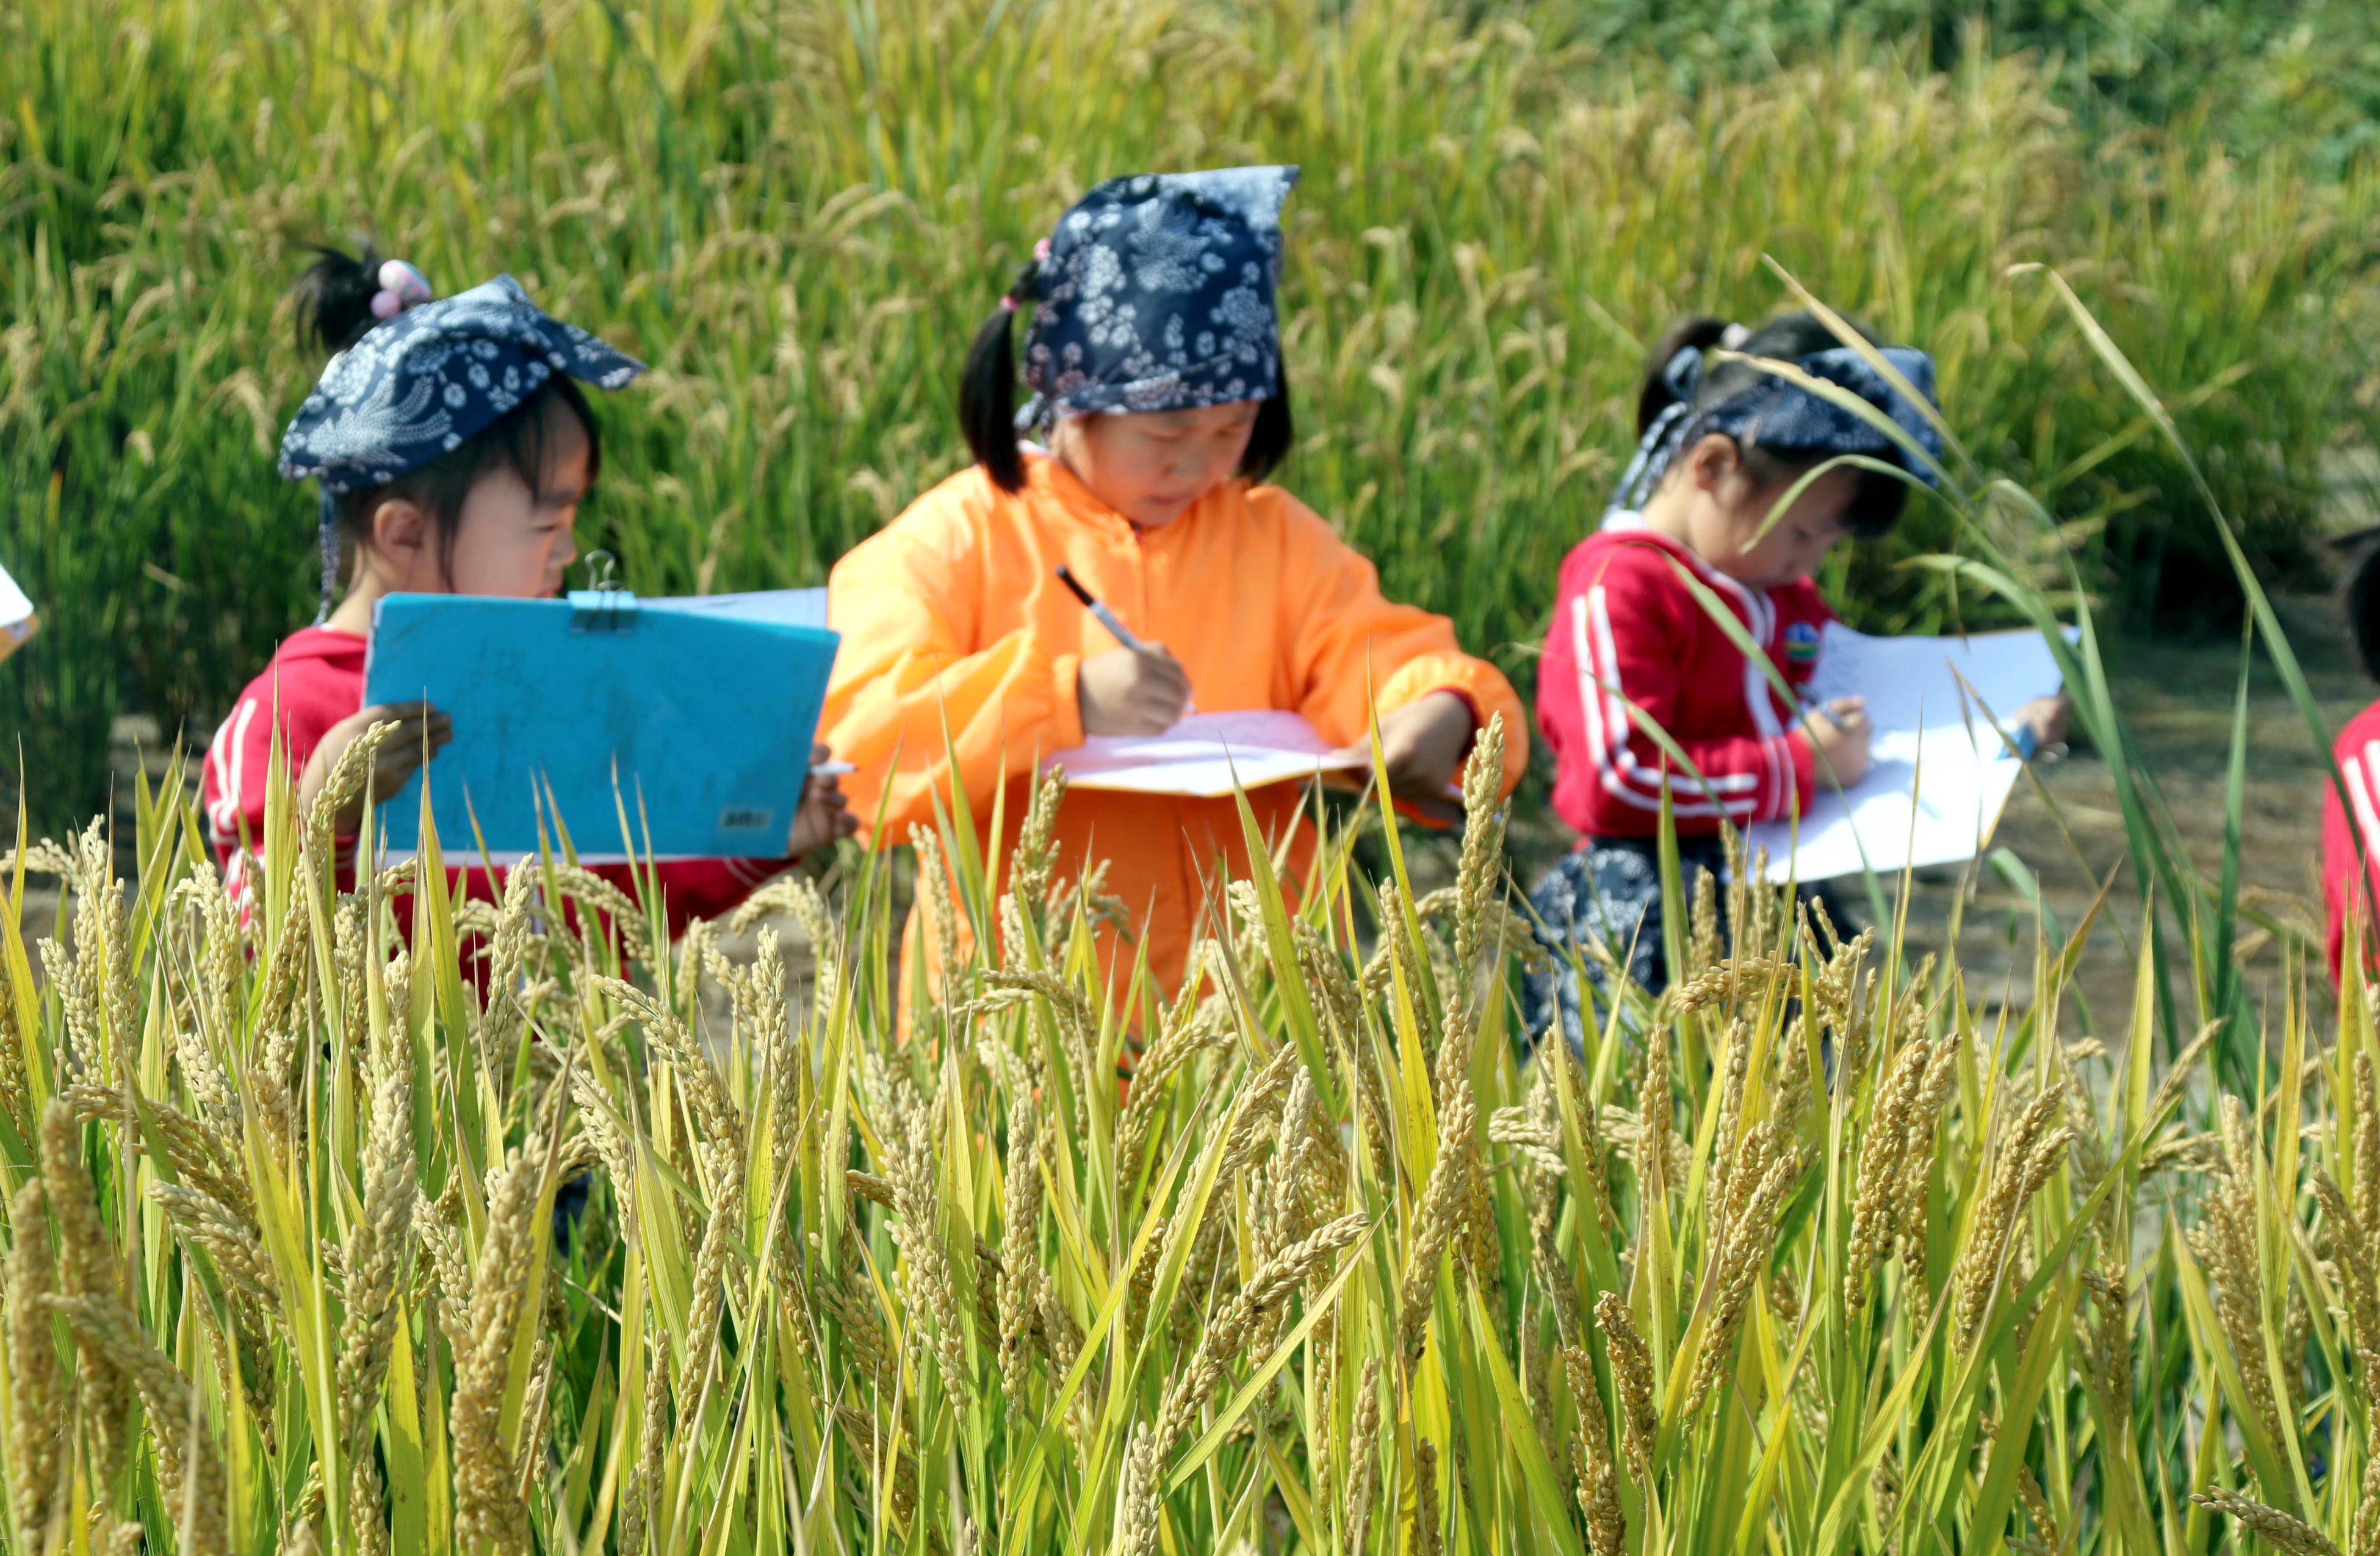 为了生存 农村留守儿童暑假挥汗收割稻田(组图) - 新闻 - 加拿大华人网 - 加拿大华人门户网站